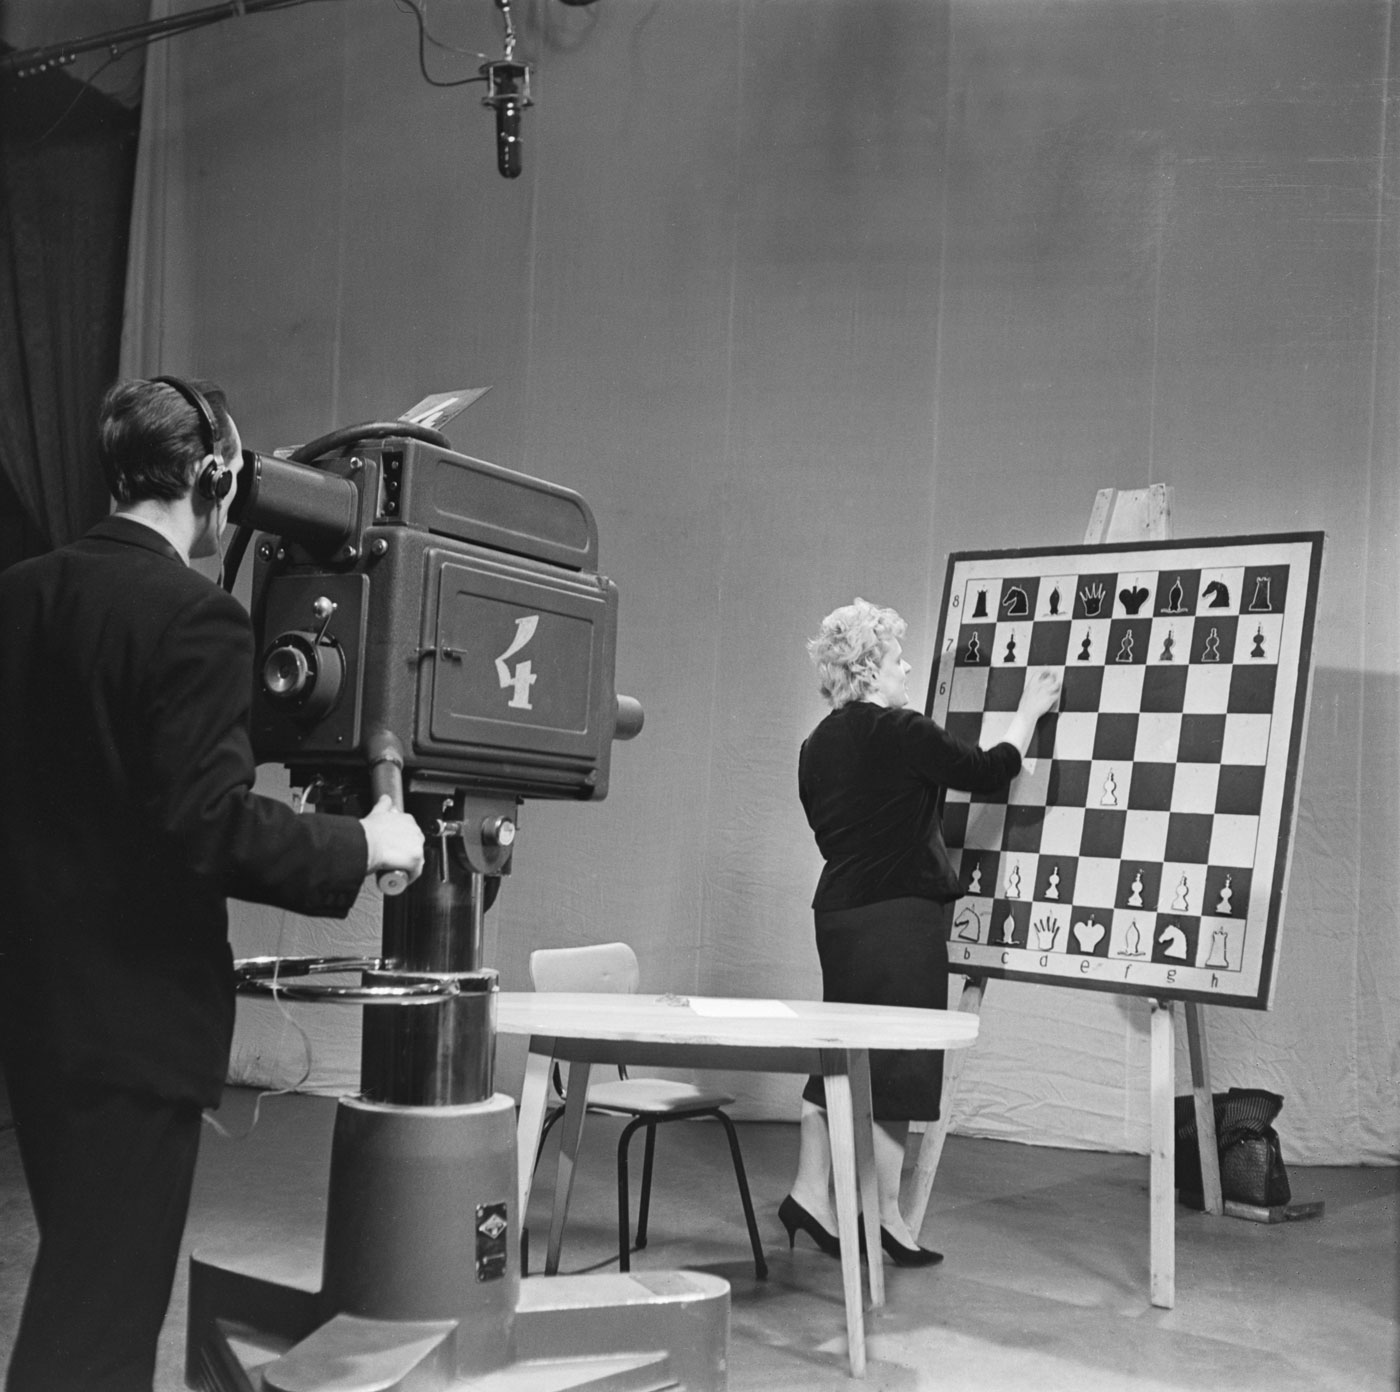 1964. Una donna analizza una partita di scacchi nel corso di una trasmissione televisiva